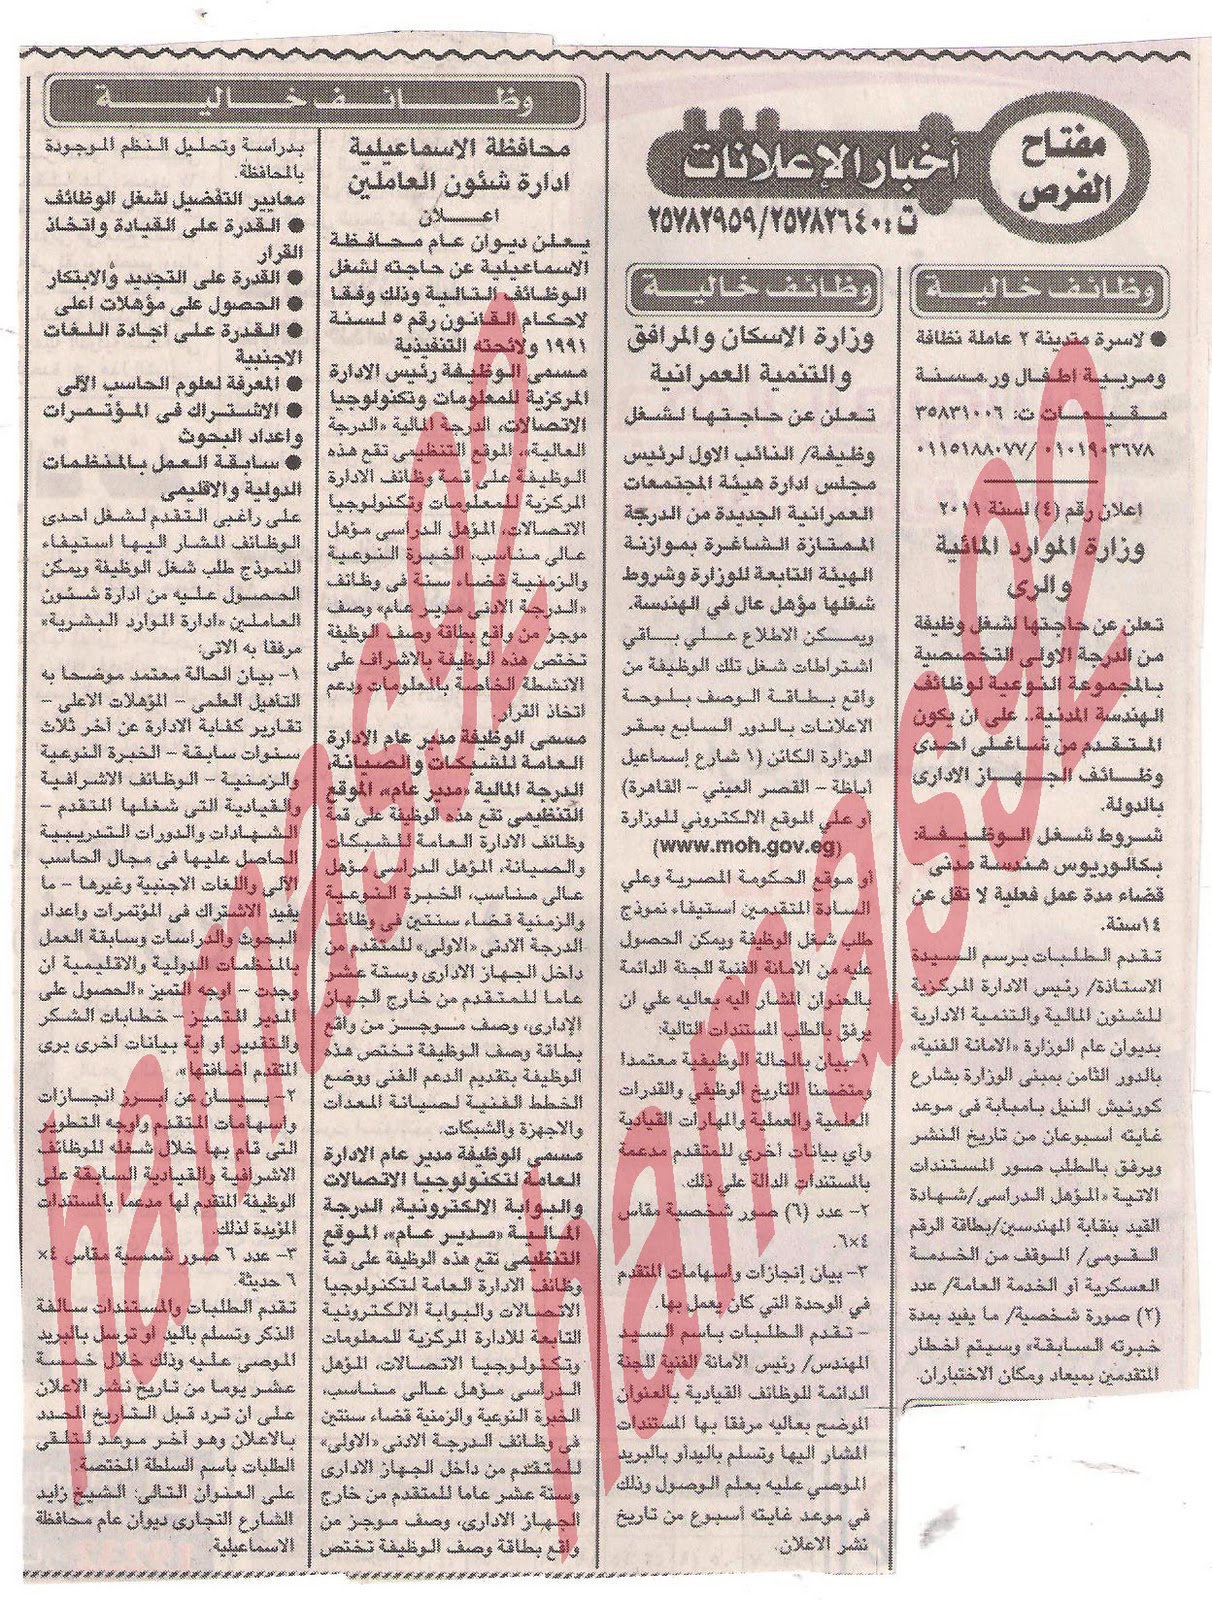 وظائف جريدة الاخبار الخميس 29/9/2011 Picture+003